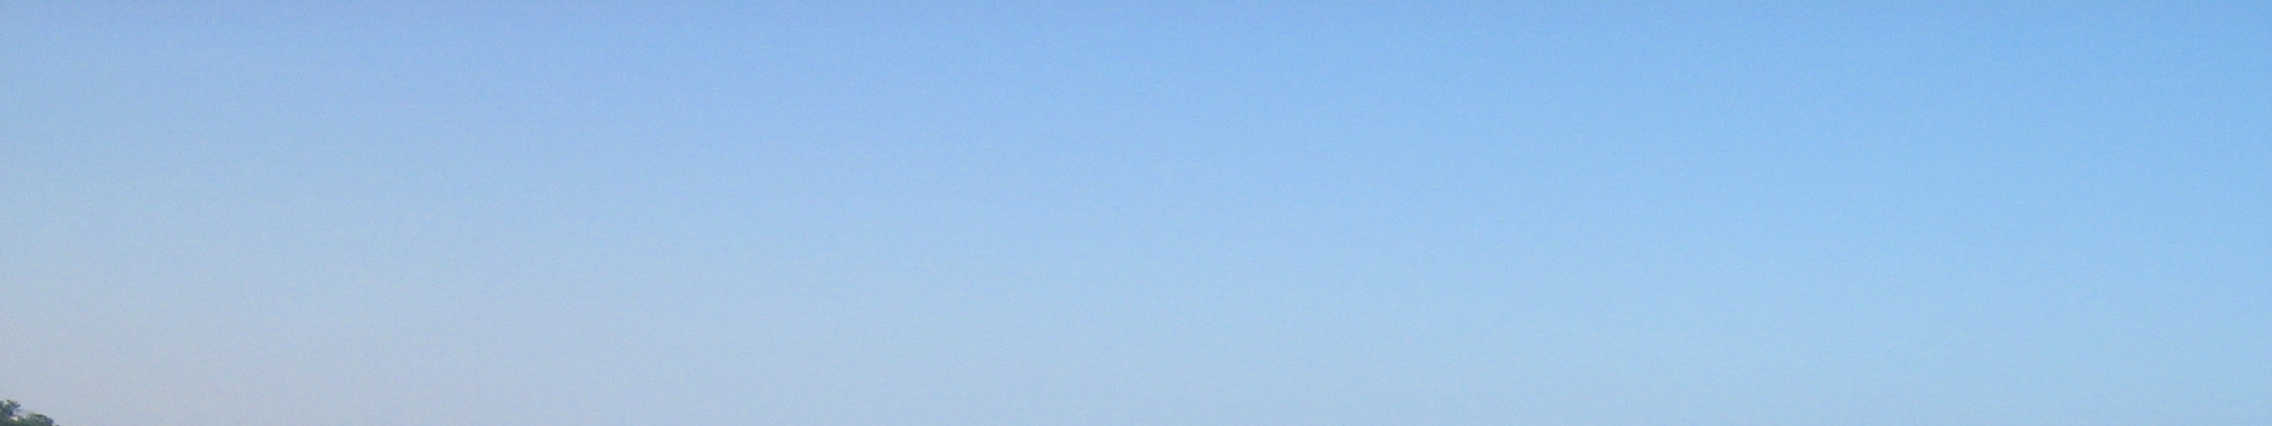 Ambito F2 - La Valle dell Aso Torre di Palme - Monte Serrone Pedaso Foto 1 - Veduta da Porto San Giorgio verso Pedaso. Il paesaggio Foto 2 - Veduta di Marina Palmense e Torre di Palme (Fermo).